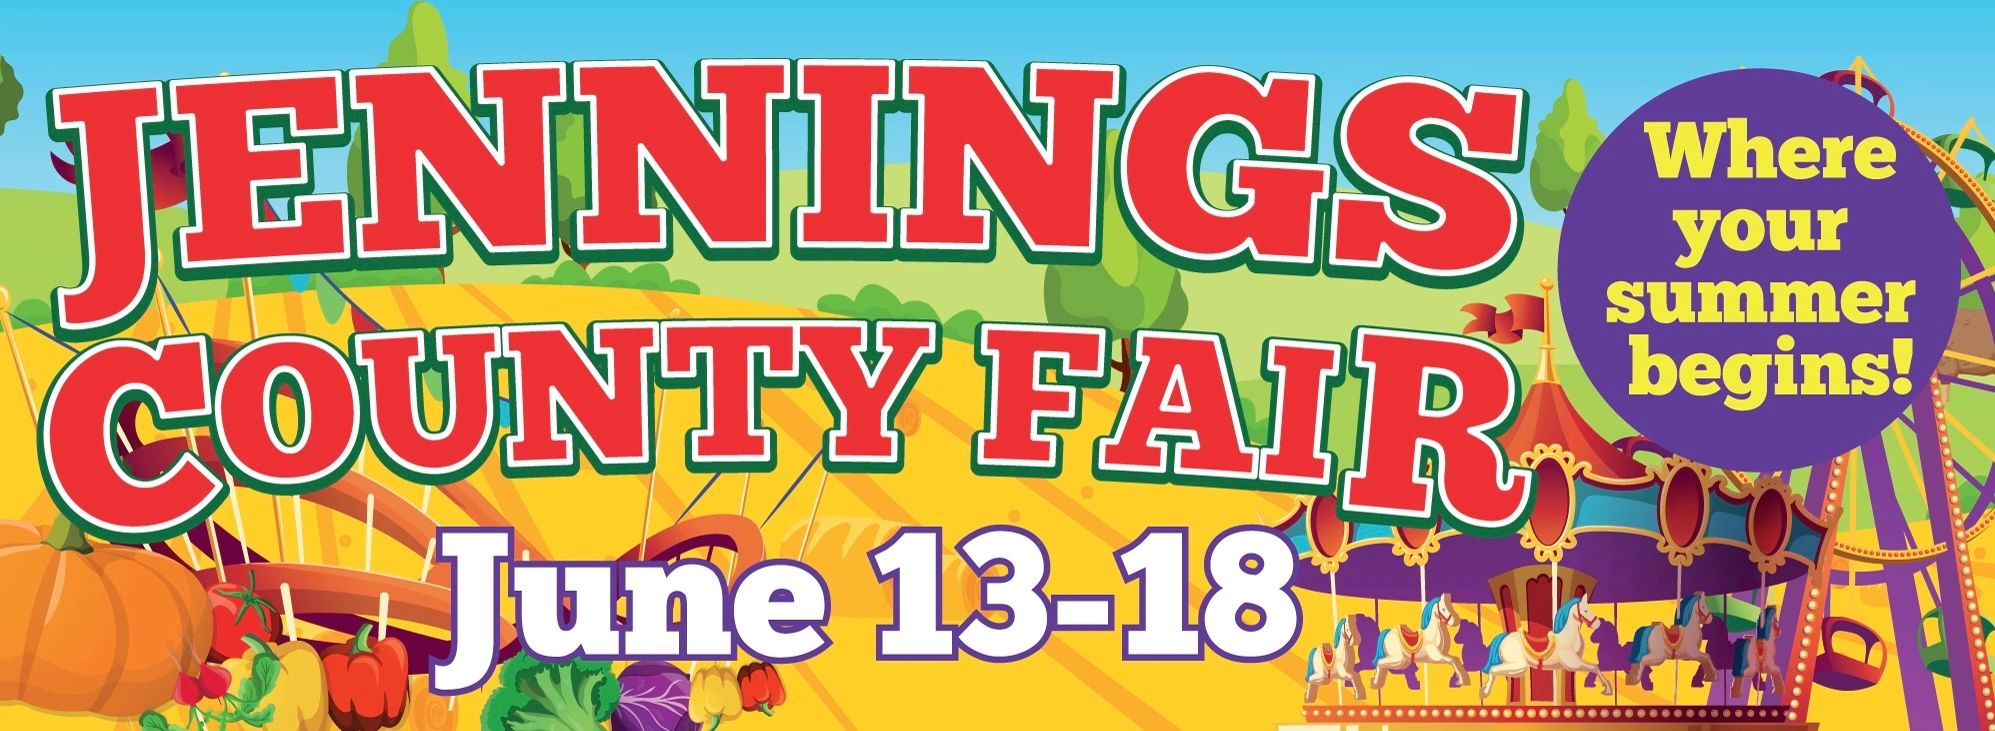 Jennings County Fair